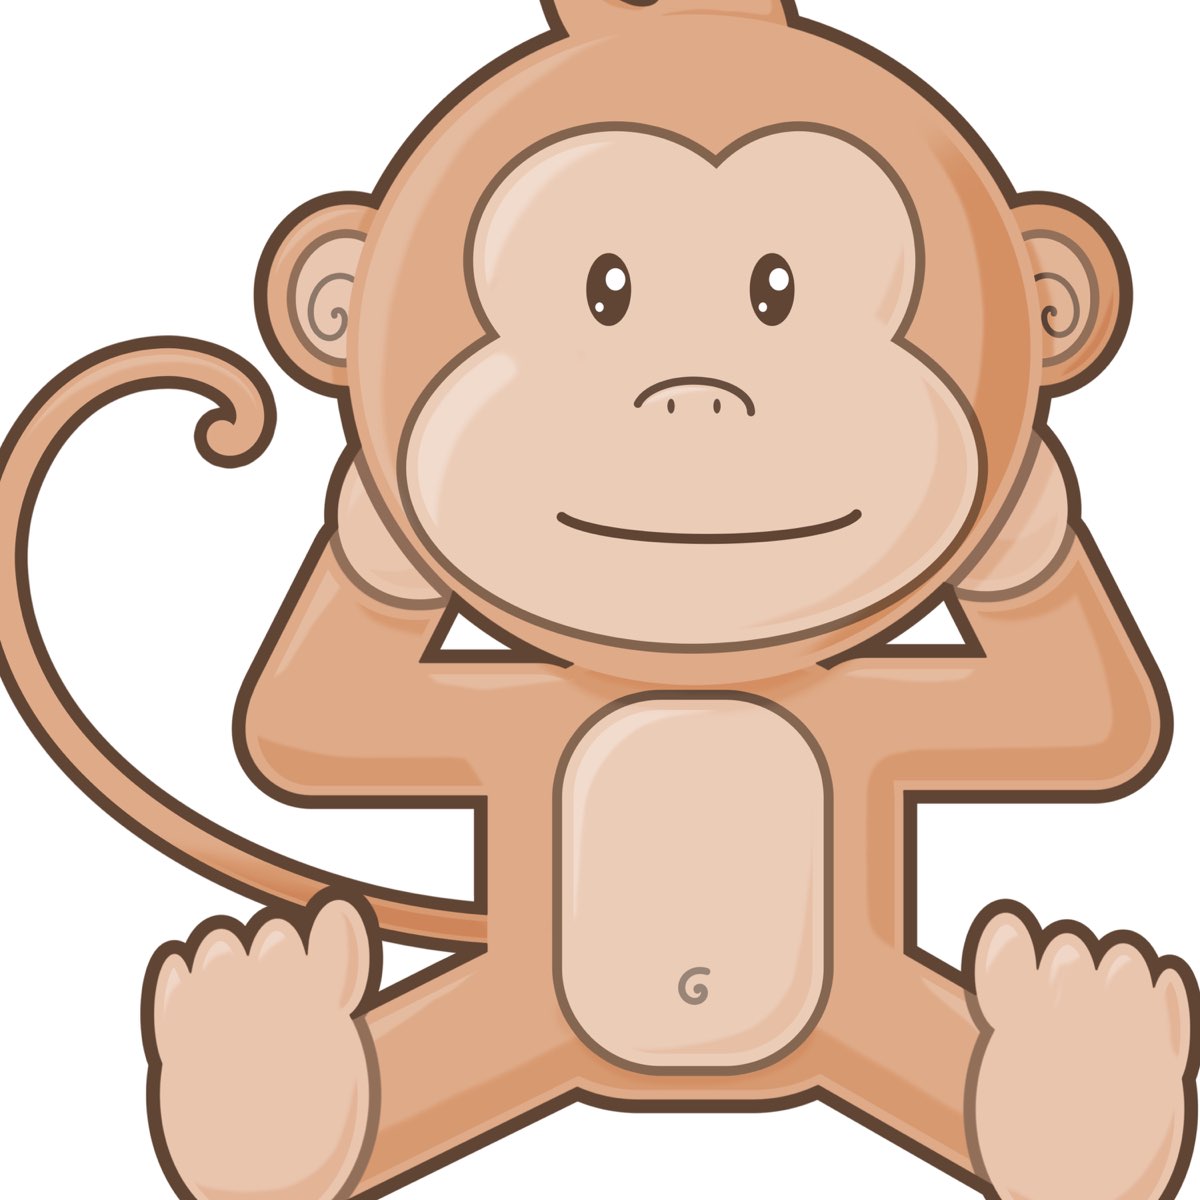 kevin-acLeod-monkey-spinning-monkeys